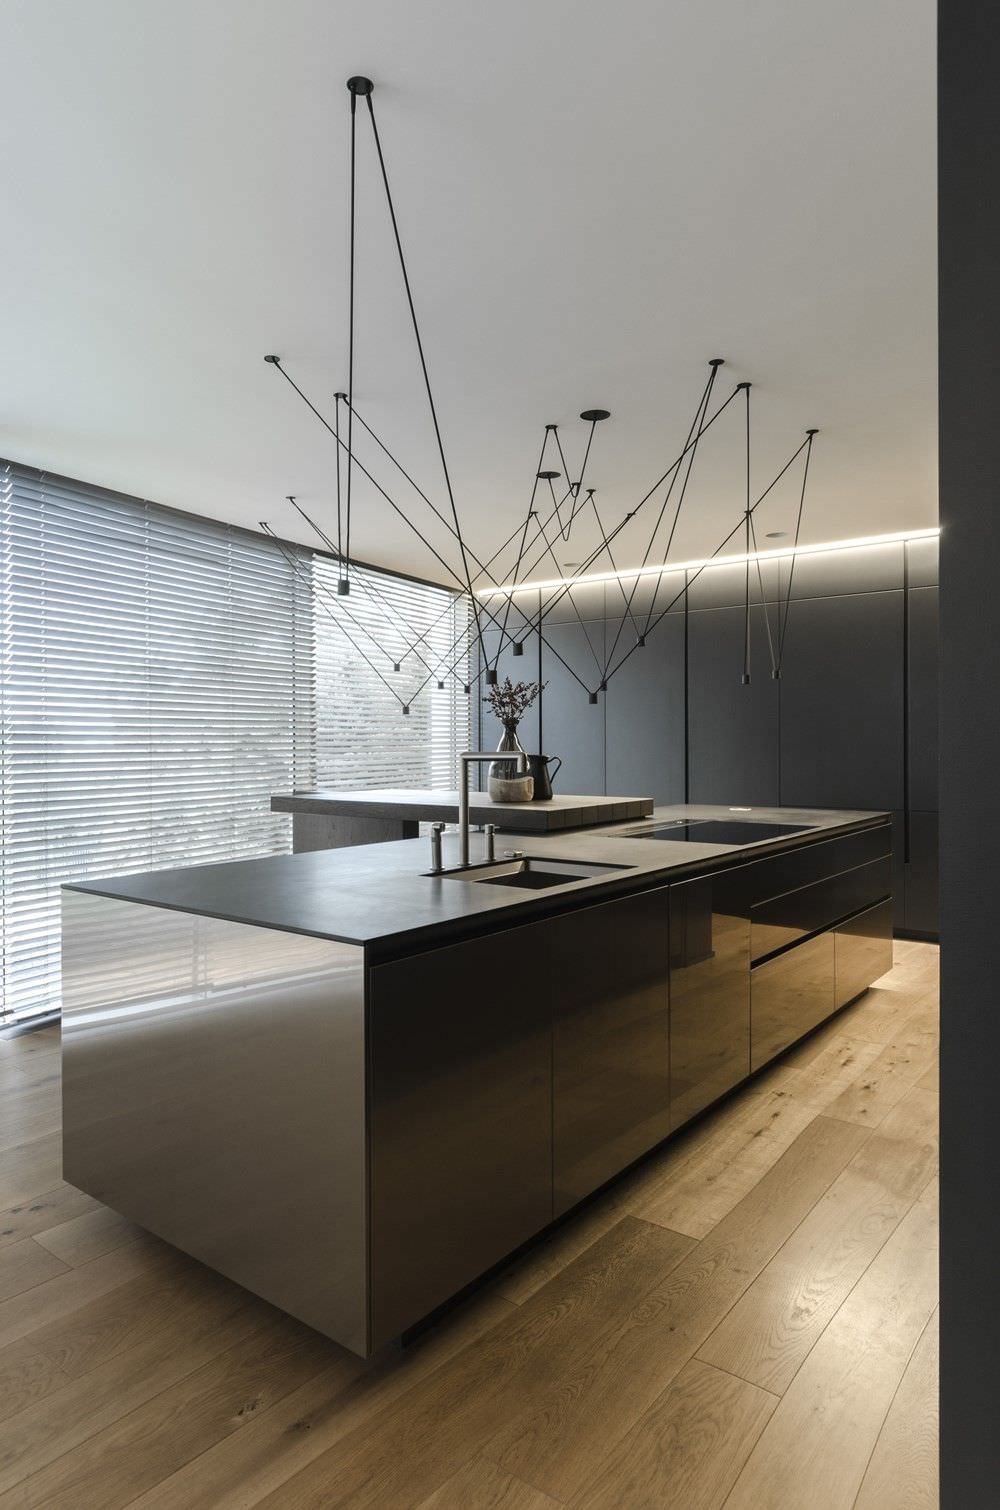 Bellissima cucina moderna in acciaio inox con top in quarzo di colore nero. Particolare illuminazione con lampade a sospensione e pavimenti in legno.